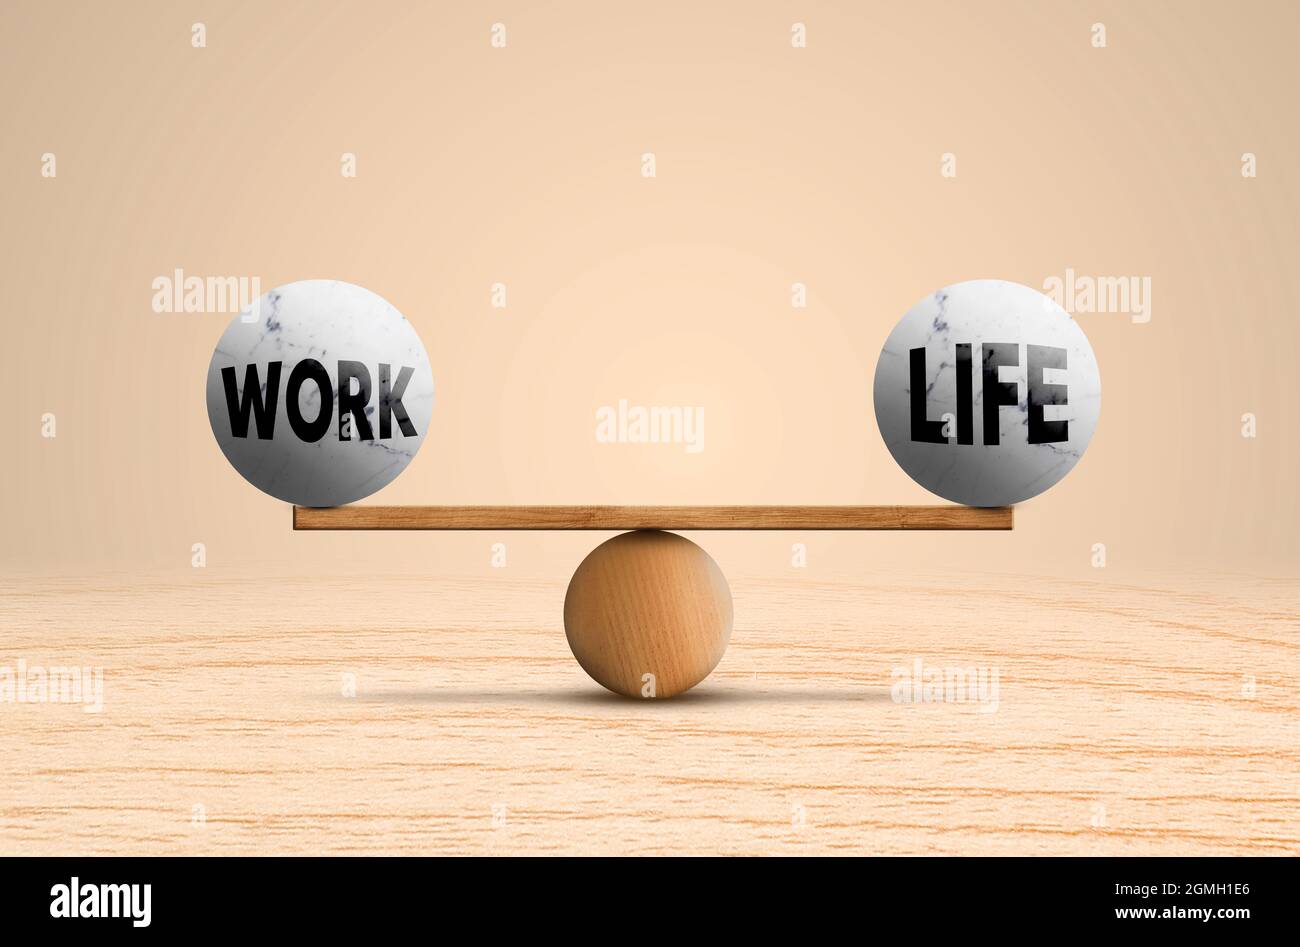 Work and Life Scale auf Holzbalance. Zwei Kugelstein mit Text auf einer Gleichheit ideale Balance. Stockfoto